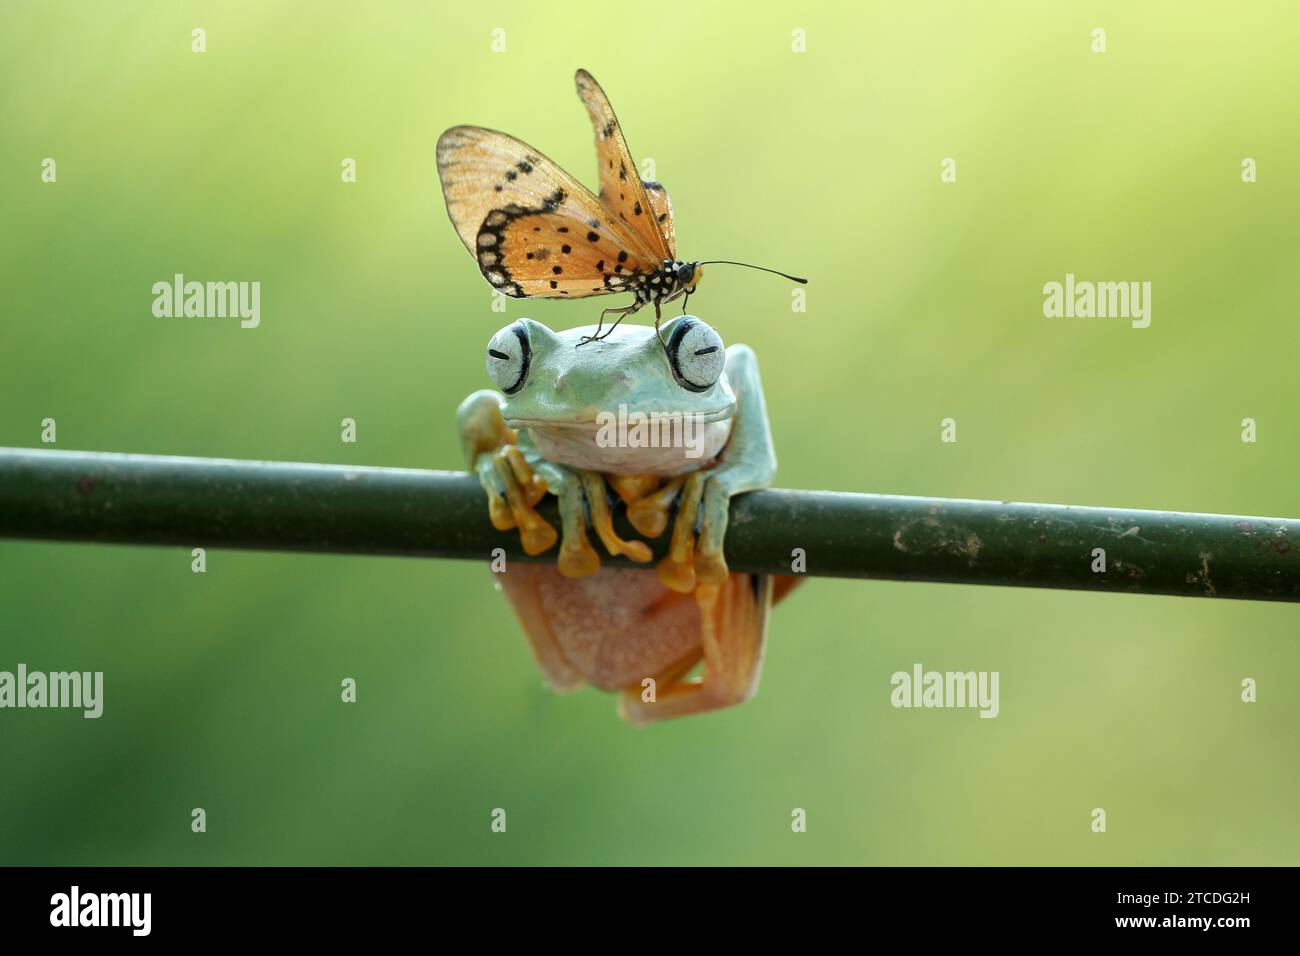 Frosch und Schmetterling Freundschaft INDONESIEN URKOMISCHE Bilder zeigen einen Tawny Coster Schmetterling, der wie ein lebender Hut auf dem Kopf eines fliegenden Frosches sitzt. Pho Stockfoto